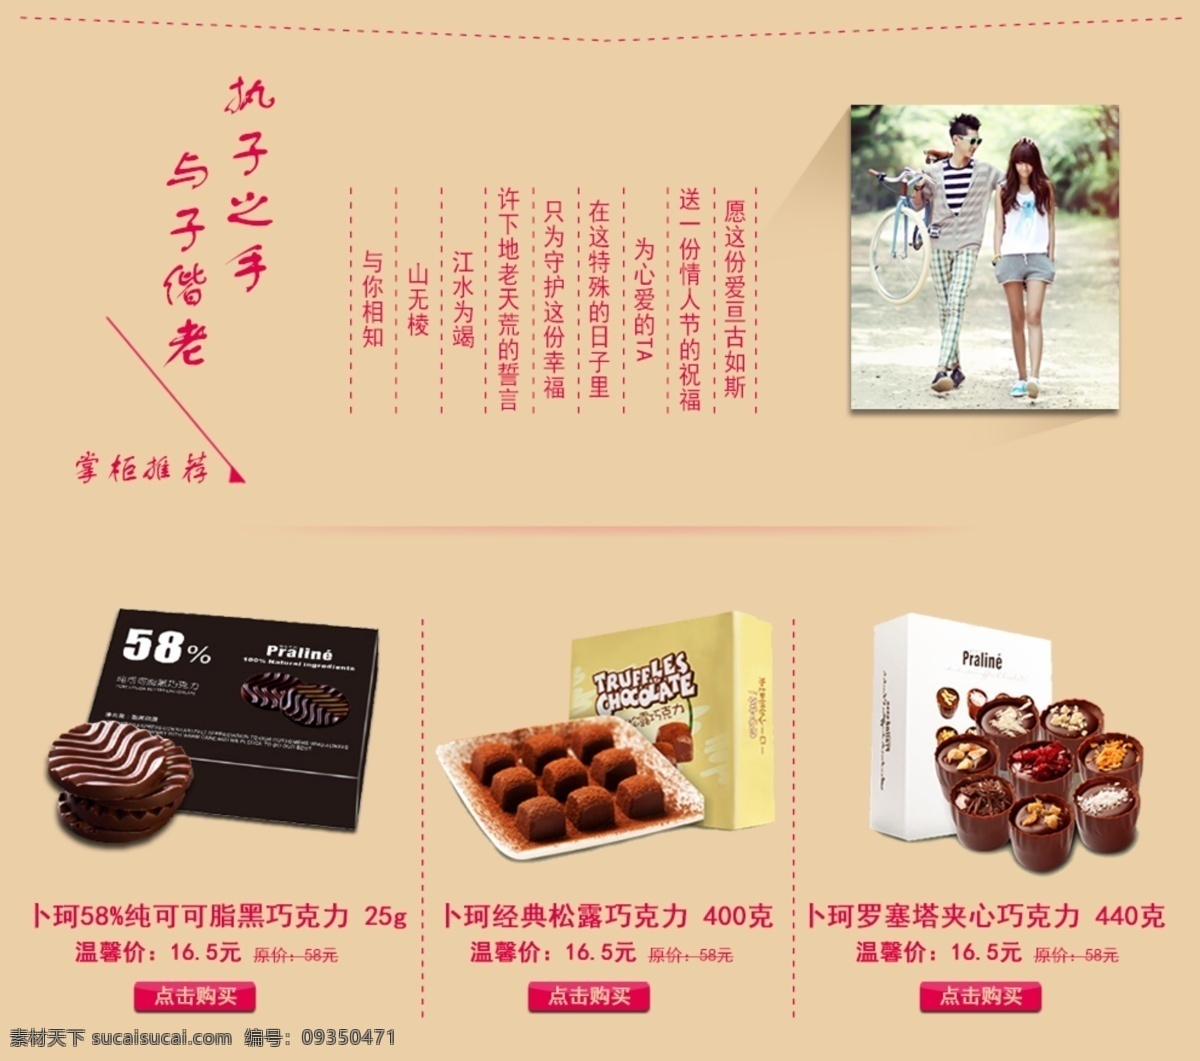 模板 巧克力 淘宝 天猫 网页模板 源文件 中文模板 装修 模板下载 巧克力模板 网页素材